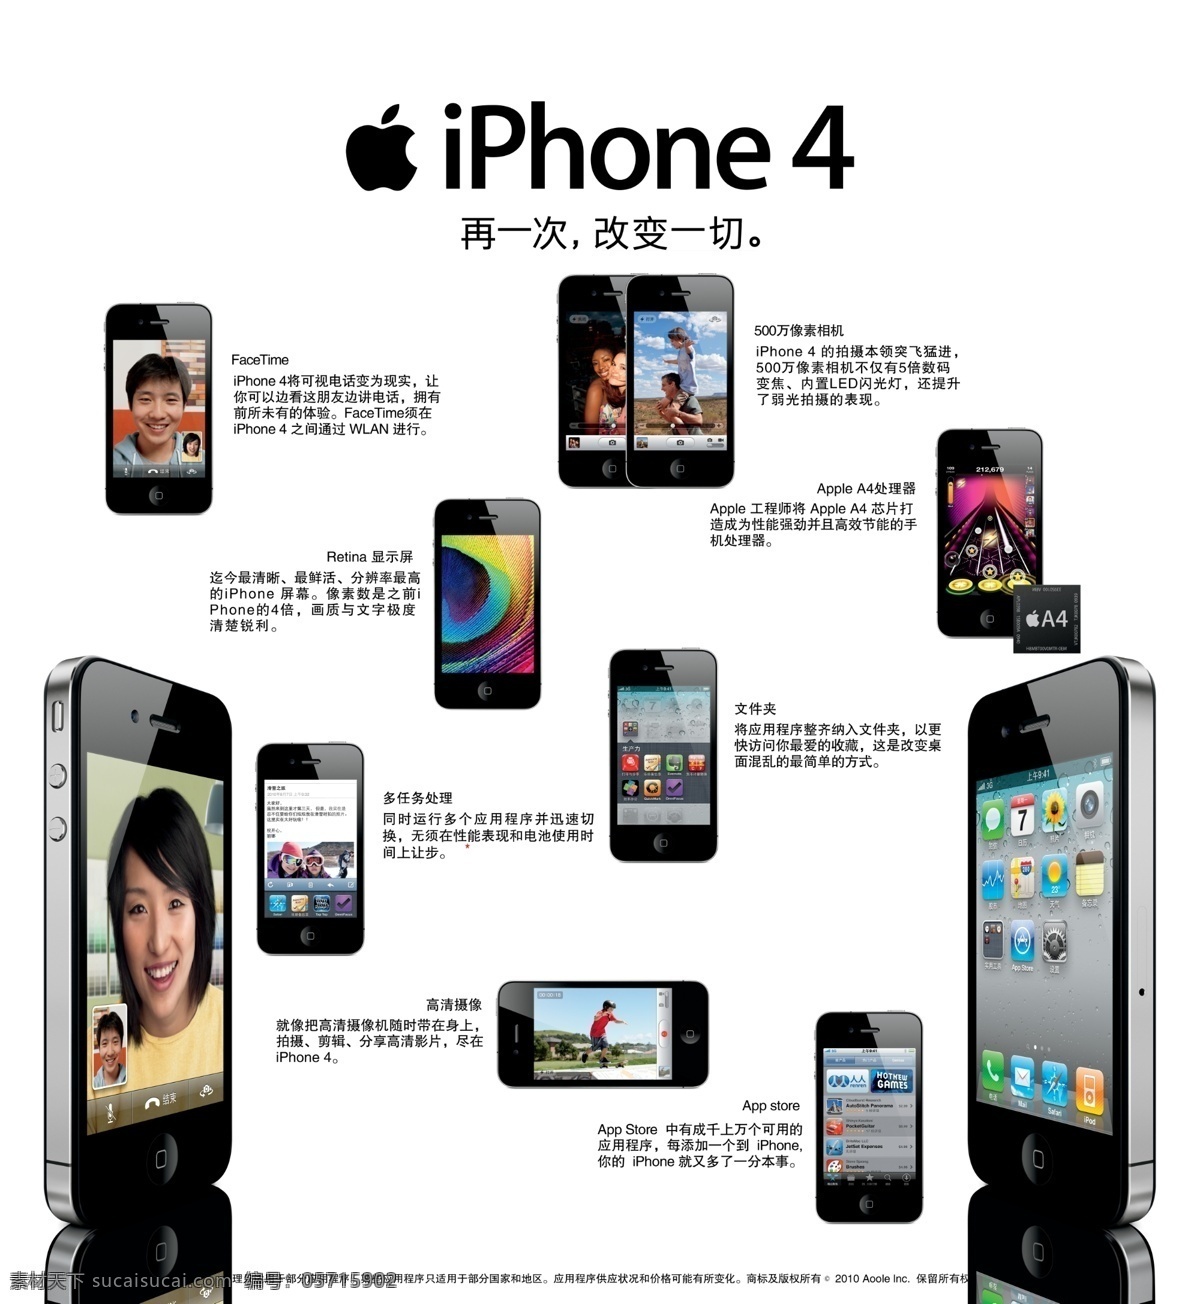 iphone 广告设计模板 苹果 苹果手机 视频通话 手机视频 文件夹 手机 模板下载 手机拍照 高清摄像 多任务处理 4代 海报 源文件 其他海报设计